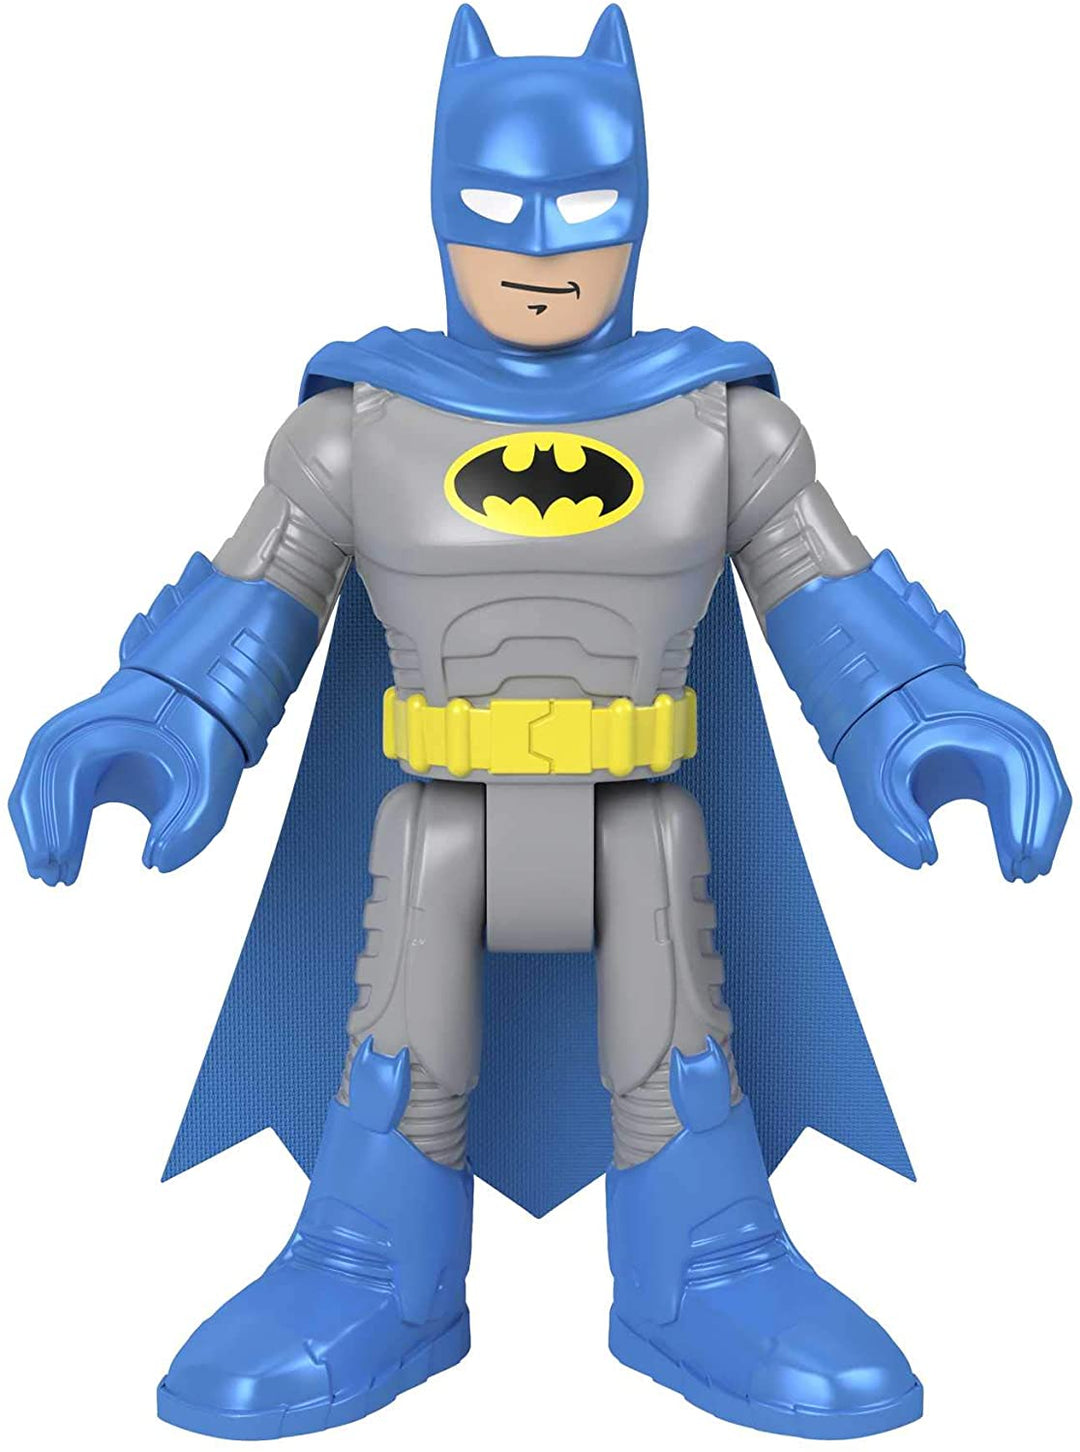 Fisher-Price Imaginext DC Super Friends Batman XL--Blue